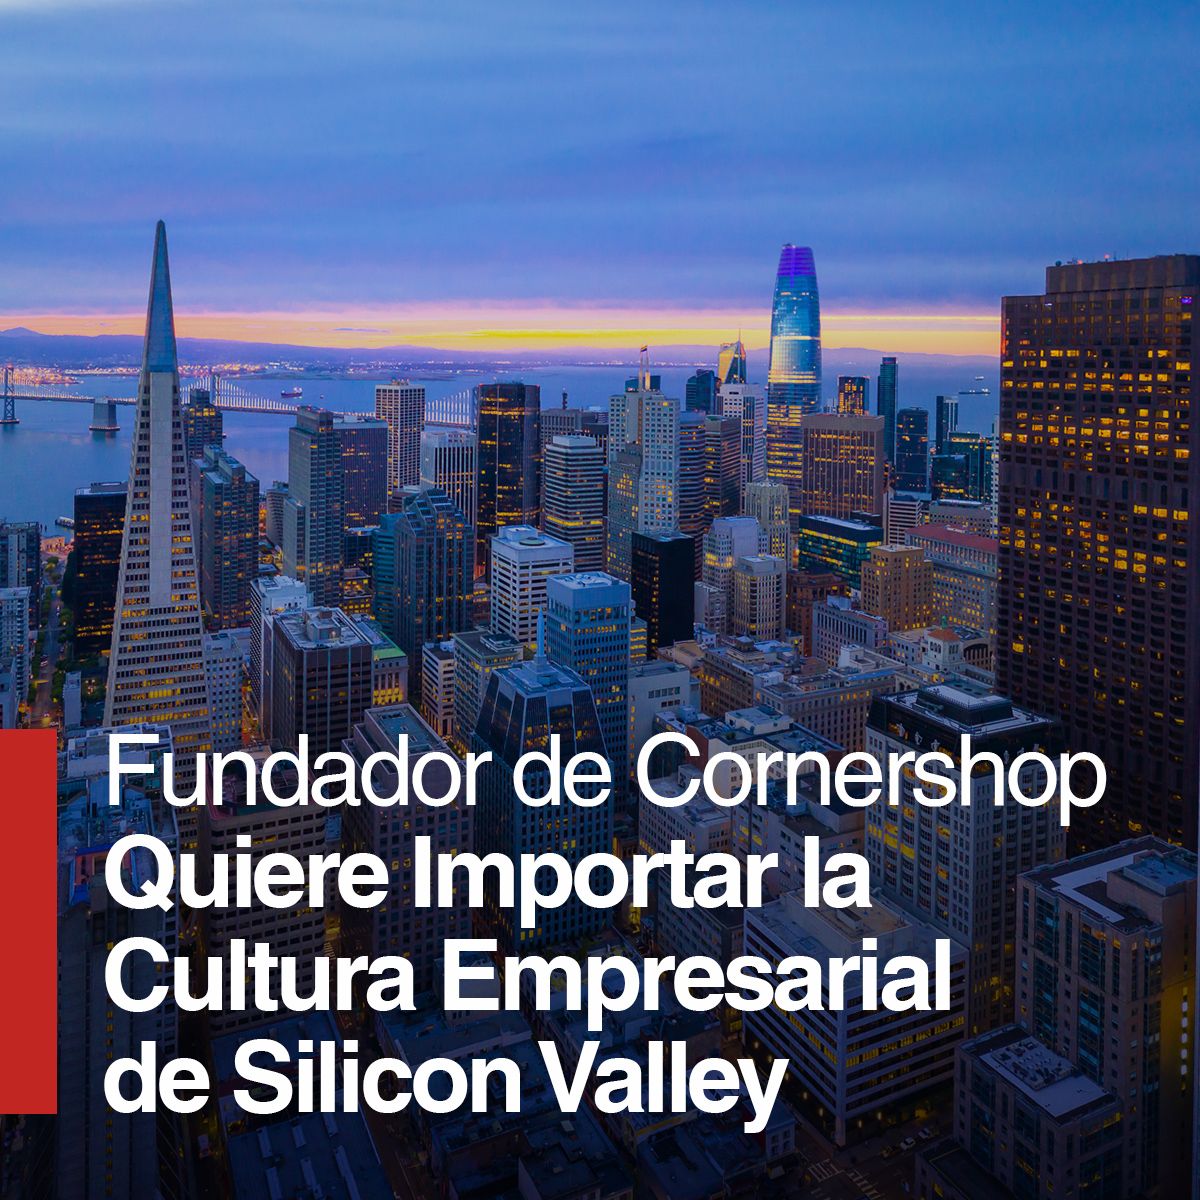 Fundador de Cornershop Quiere Importar la Cultura Empresarial de Silicon Valley